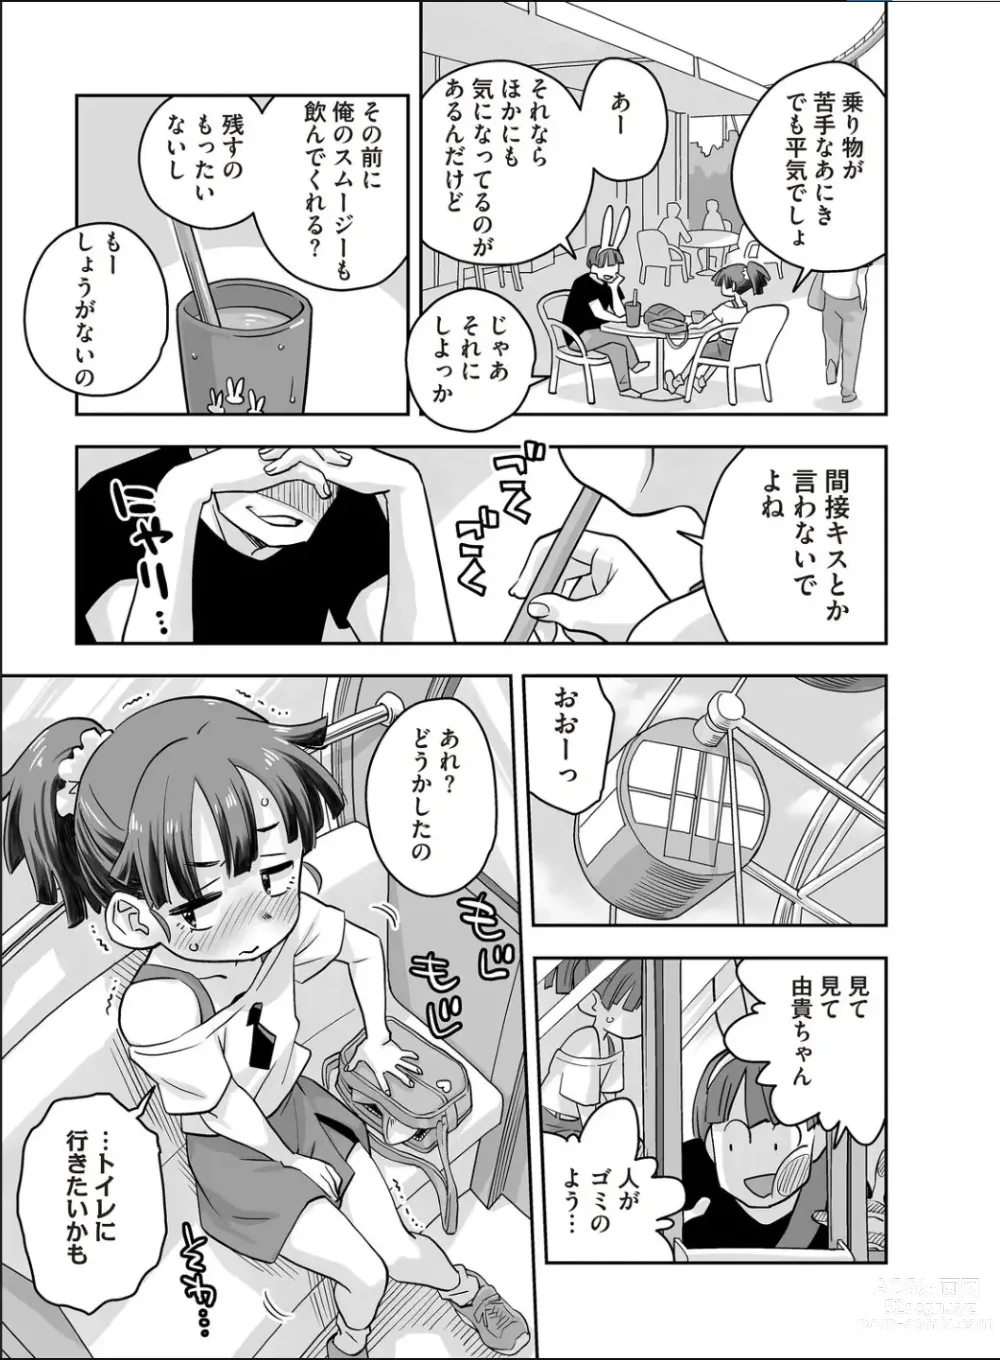 Page 3 of manga Codename wa 062